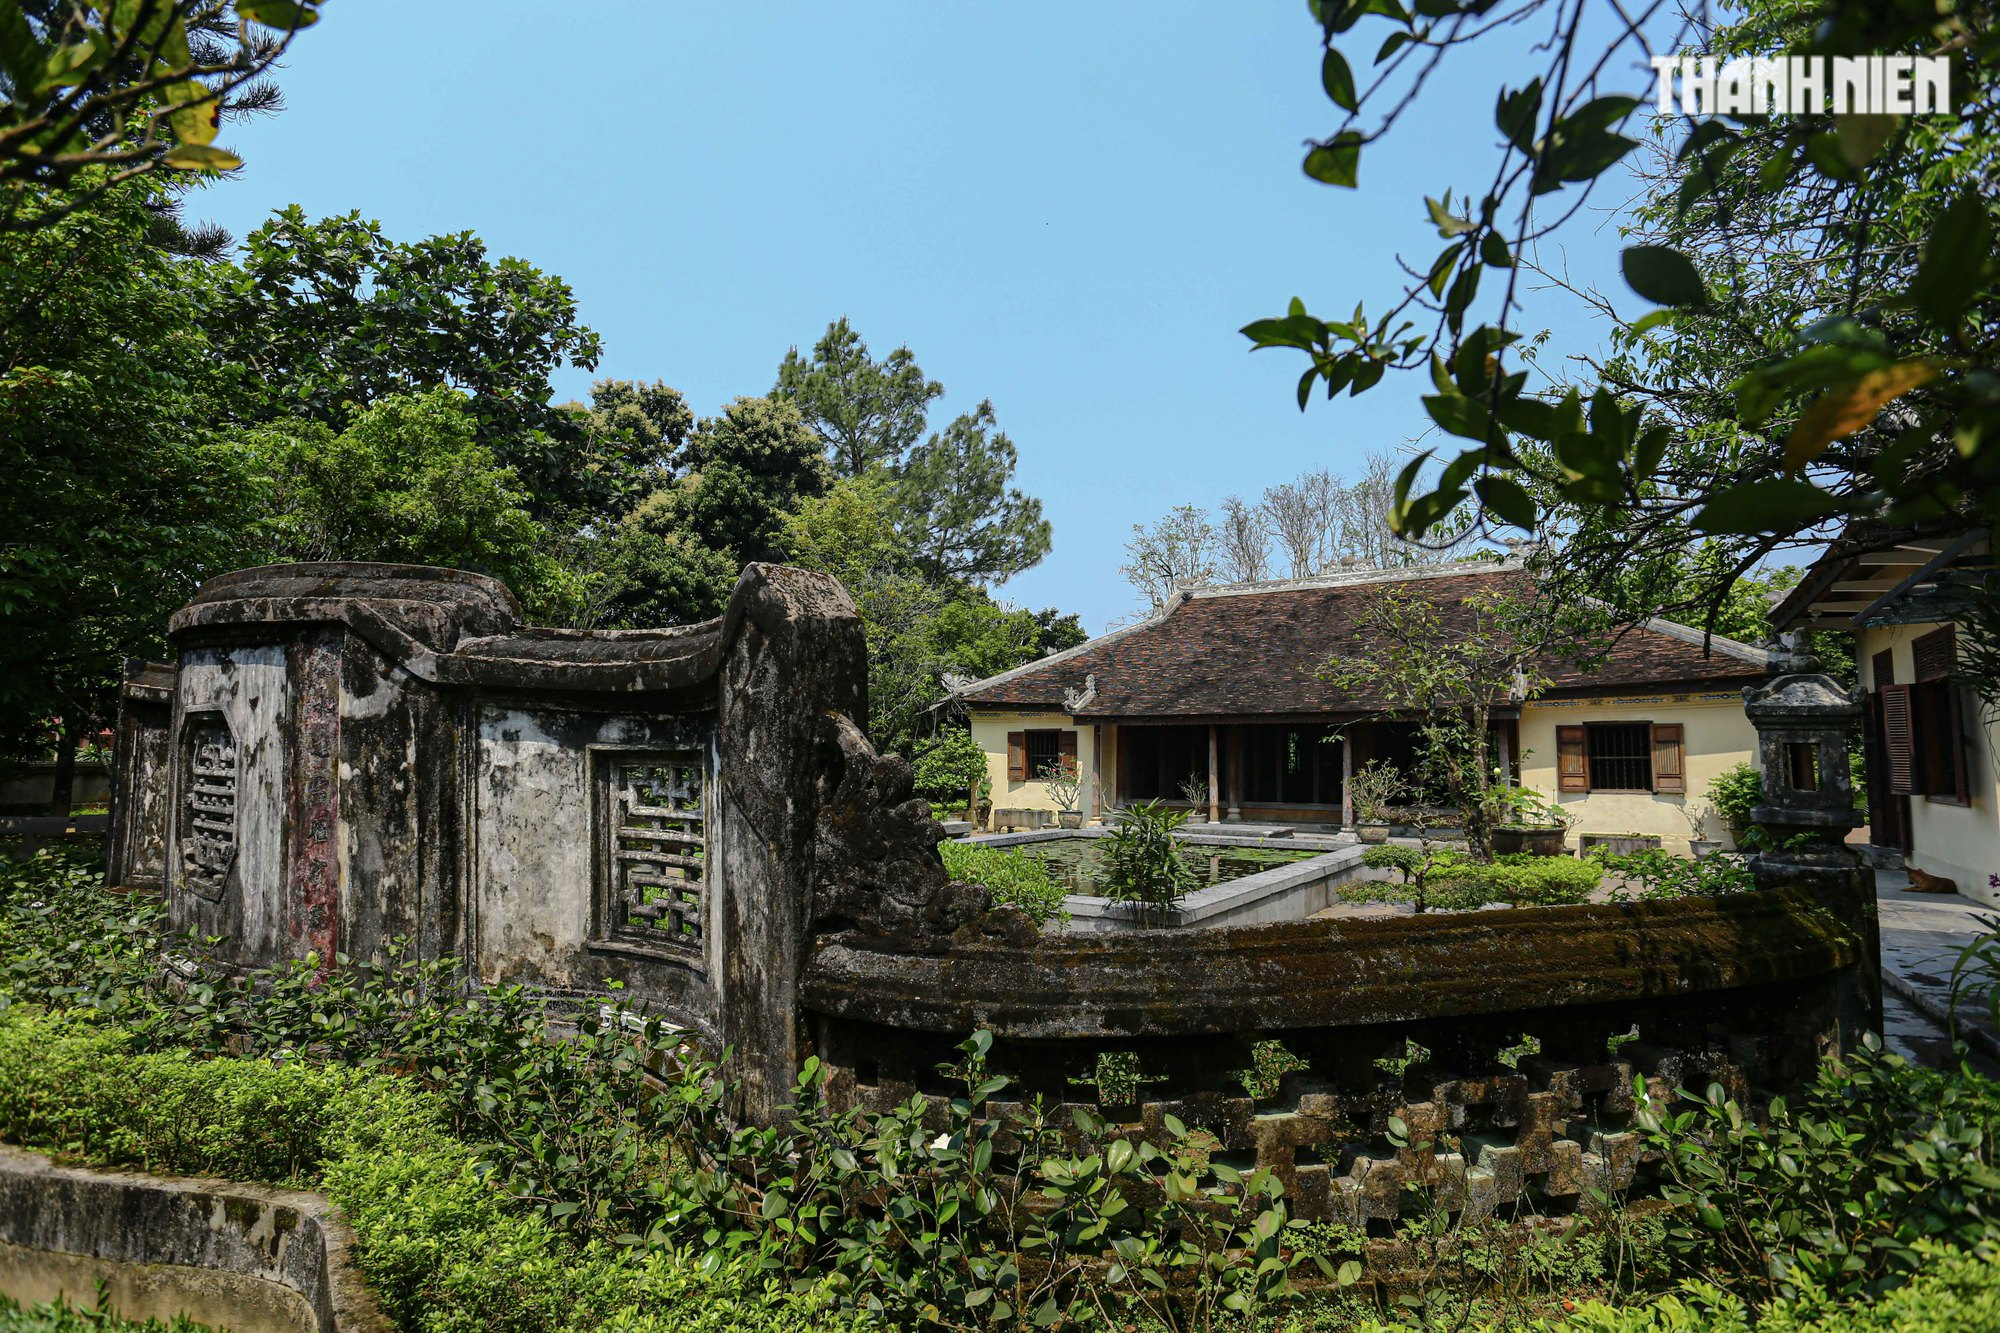 Vết thời gian trong nhà vườn 150 năm ở xứ Huế của công chúa triều Nguyễn